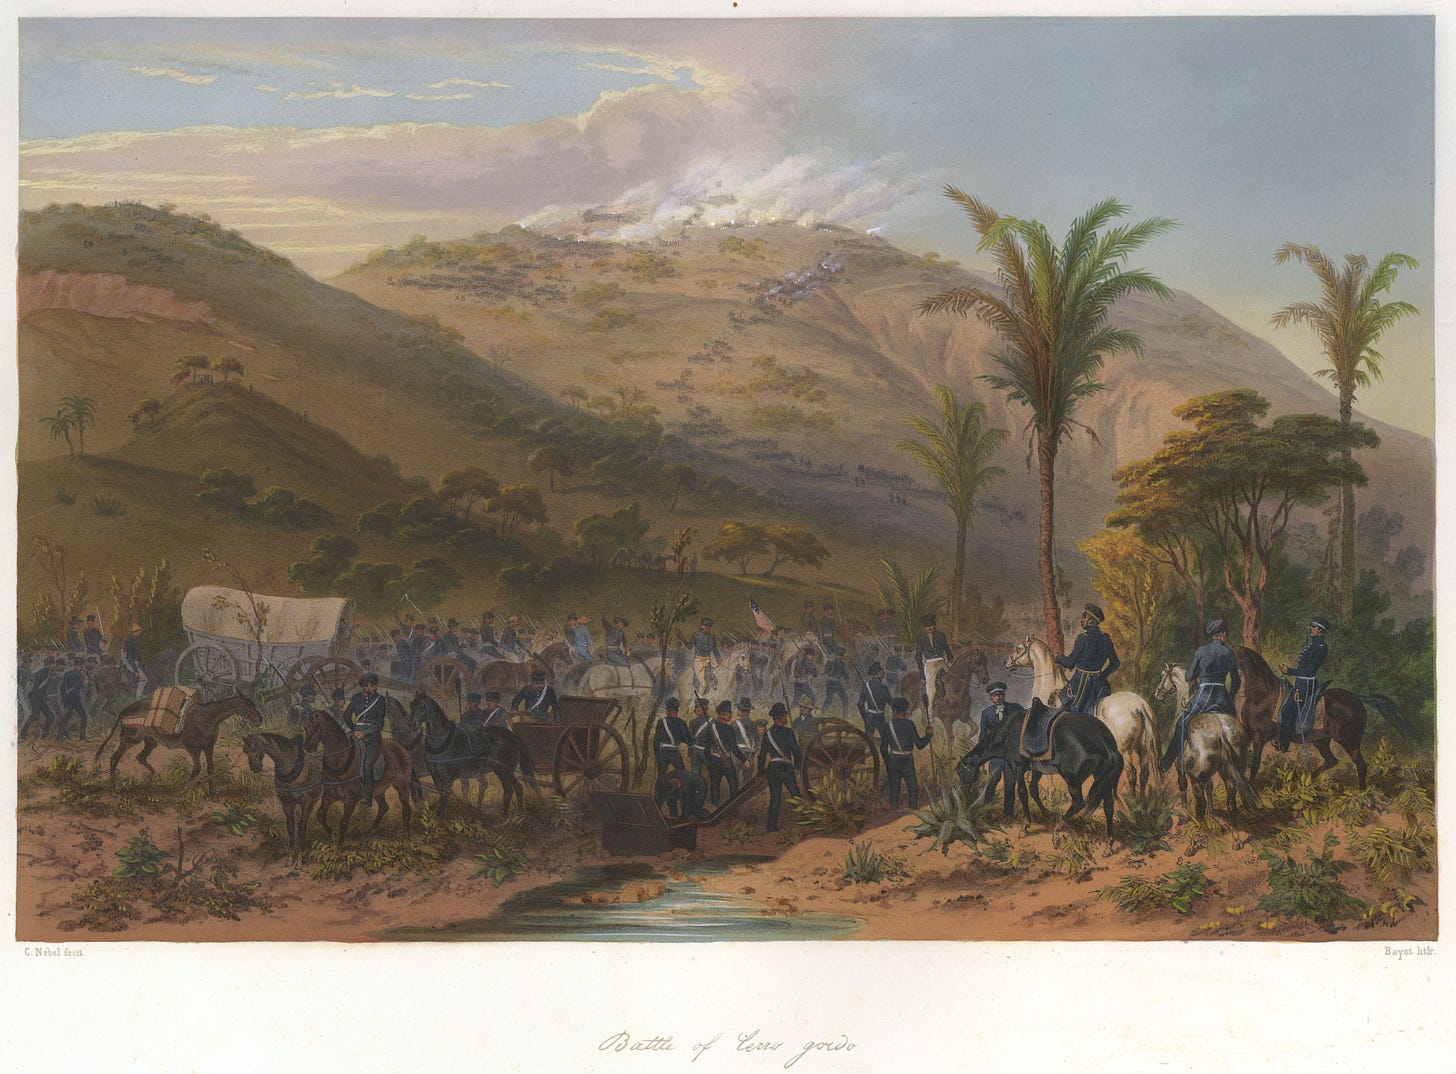 Battle of Cerro Gordo - Wikipedia